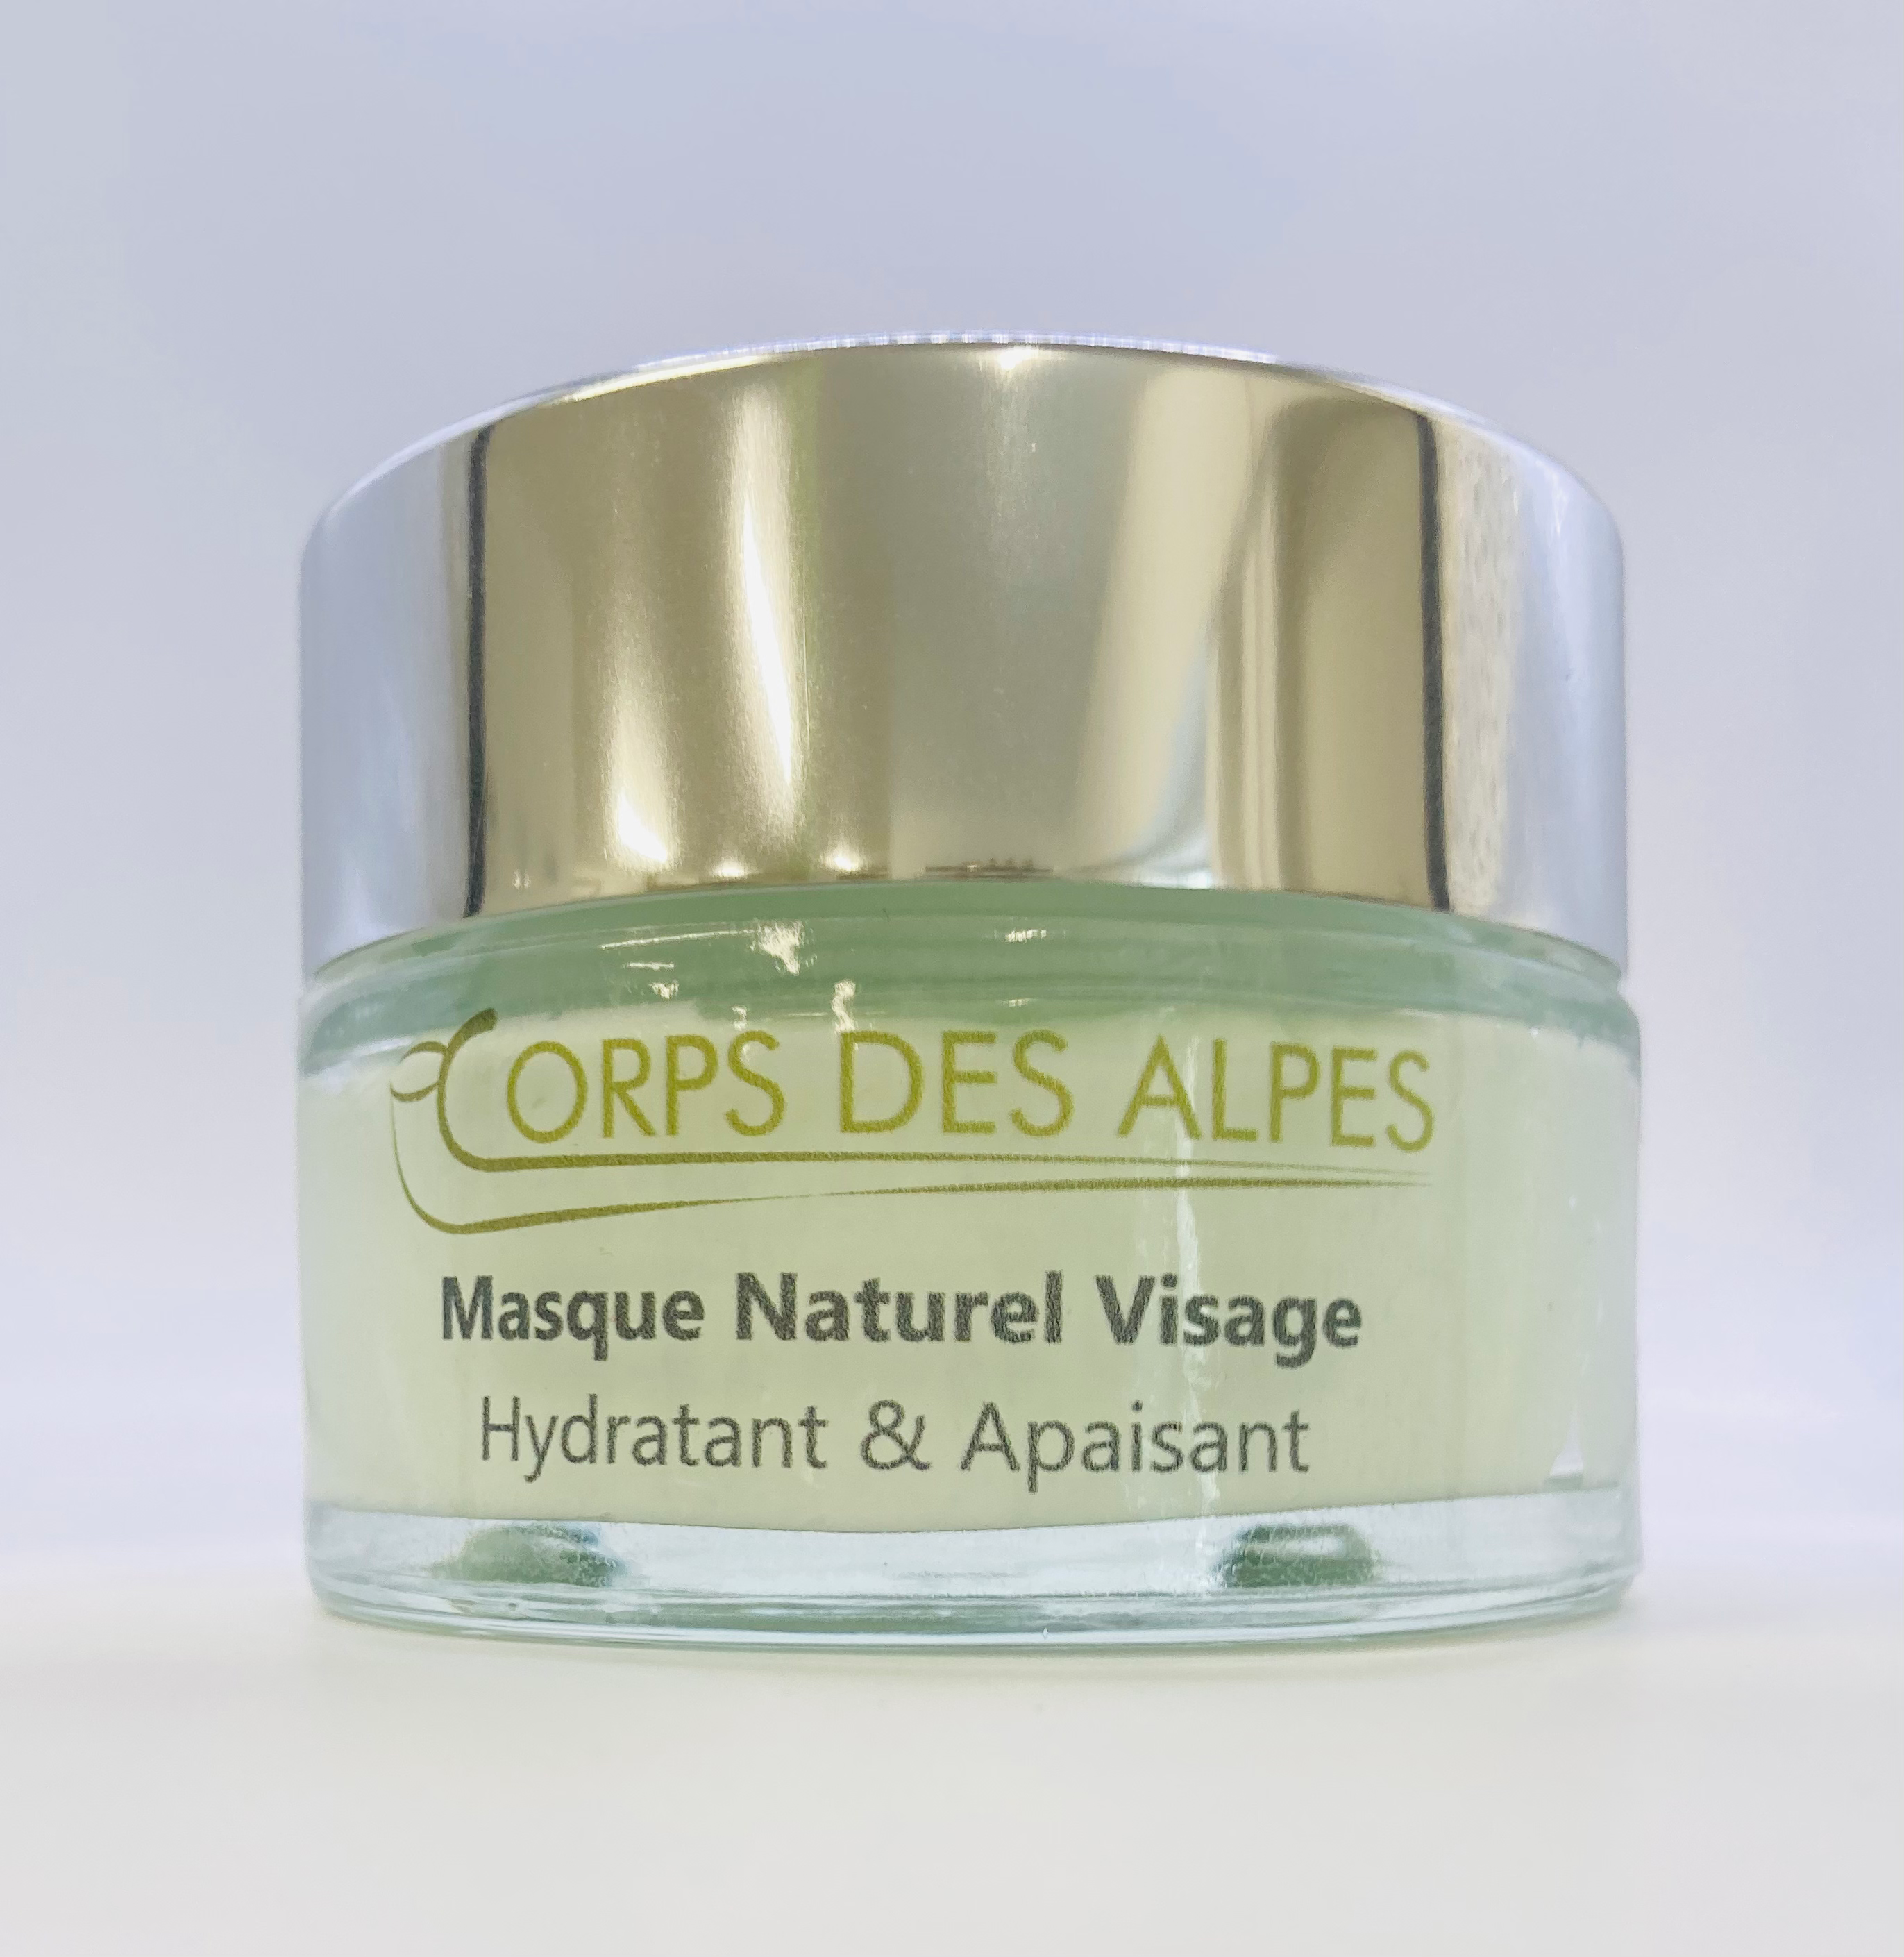 Masque Naturel Visage, handwerkliches Produkt für den Direktverkauf in der Schweiz